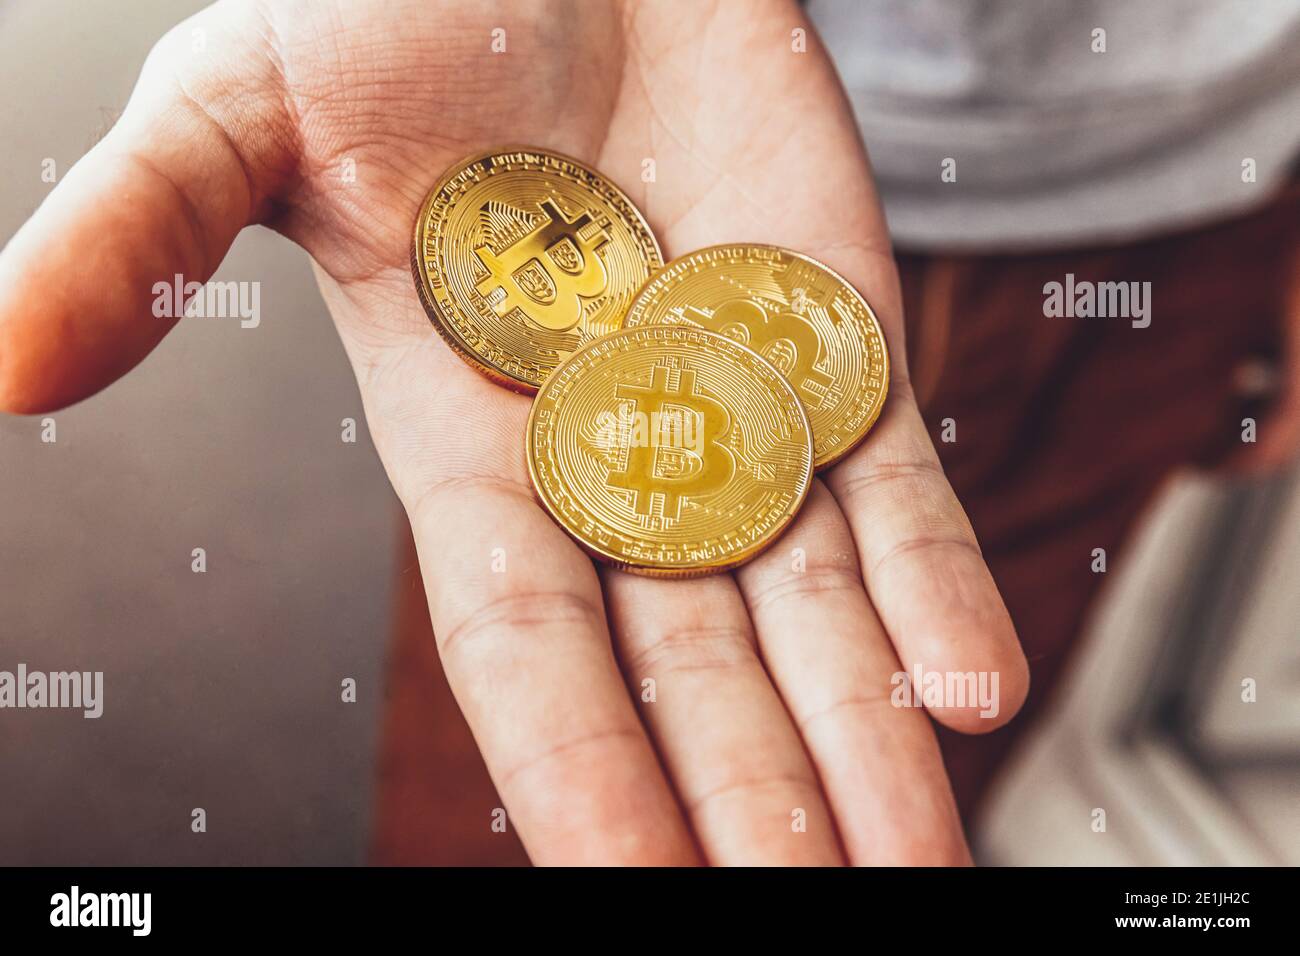 Mann Hand hält Kryptowährung goldene Bitcoin Münze. Elektronisches virtuelles Geld für Webbanking und internationale Netzzahlung. Symbol der Krypto virt Stockfoto